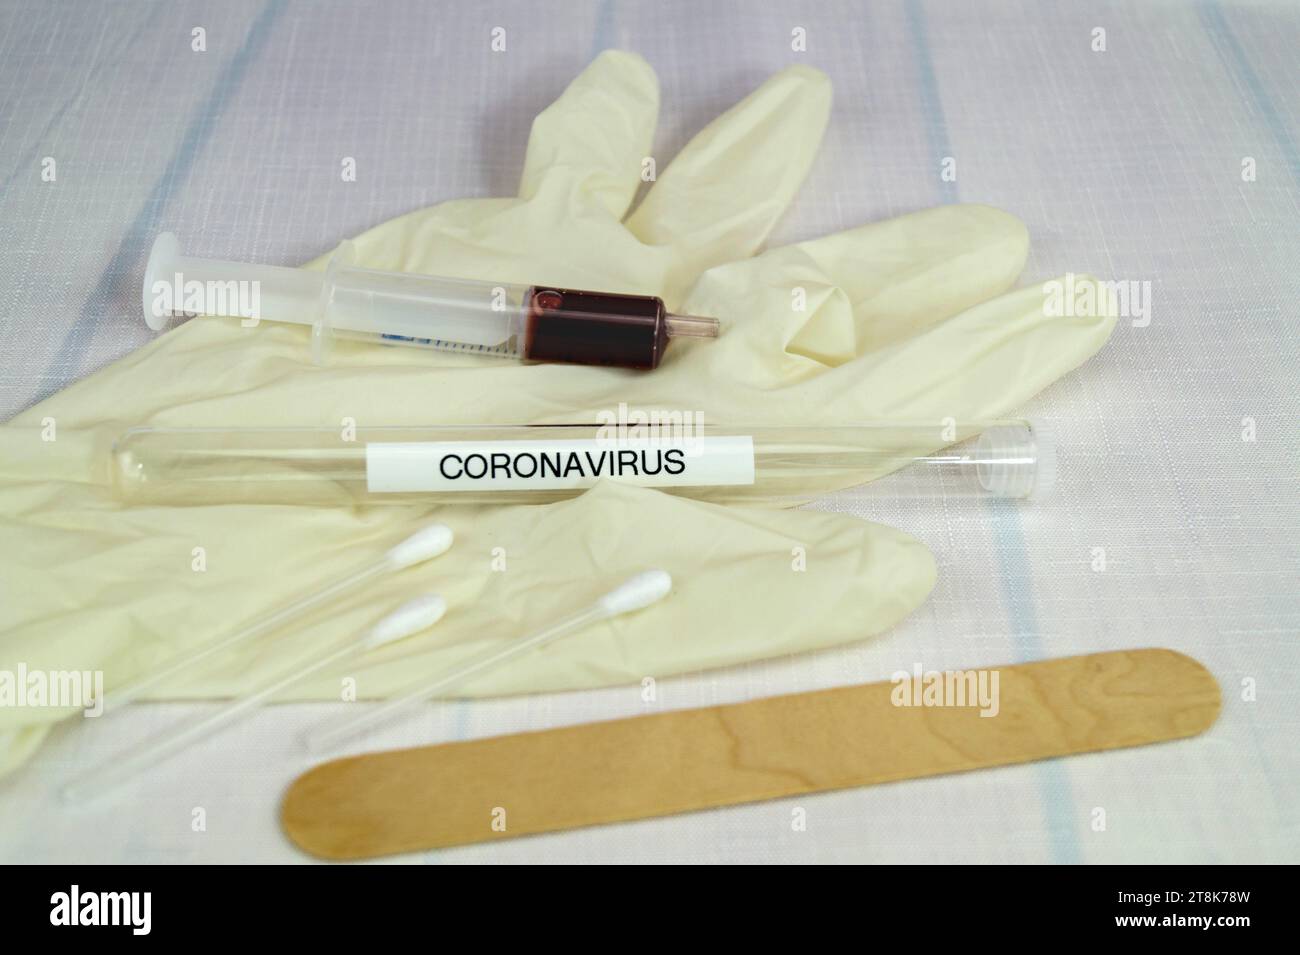 Corona test tubule, syringe, latex glove, cotton swab and spatula Stock Photo